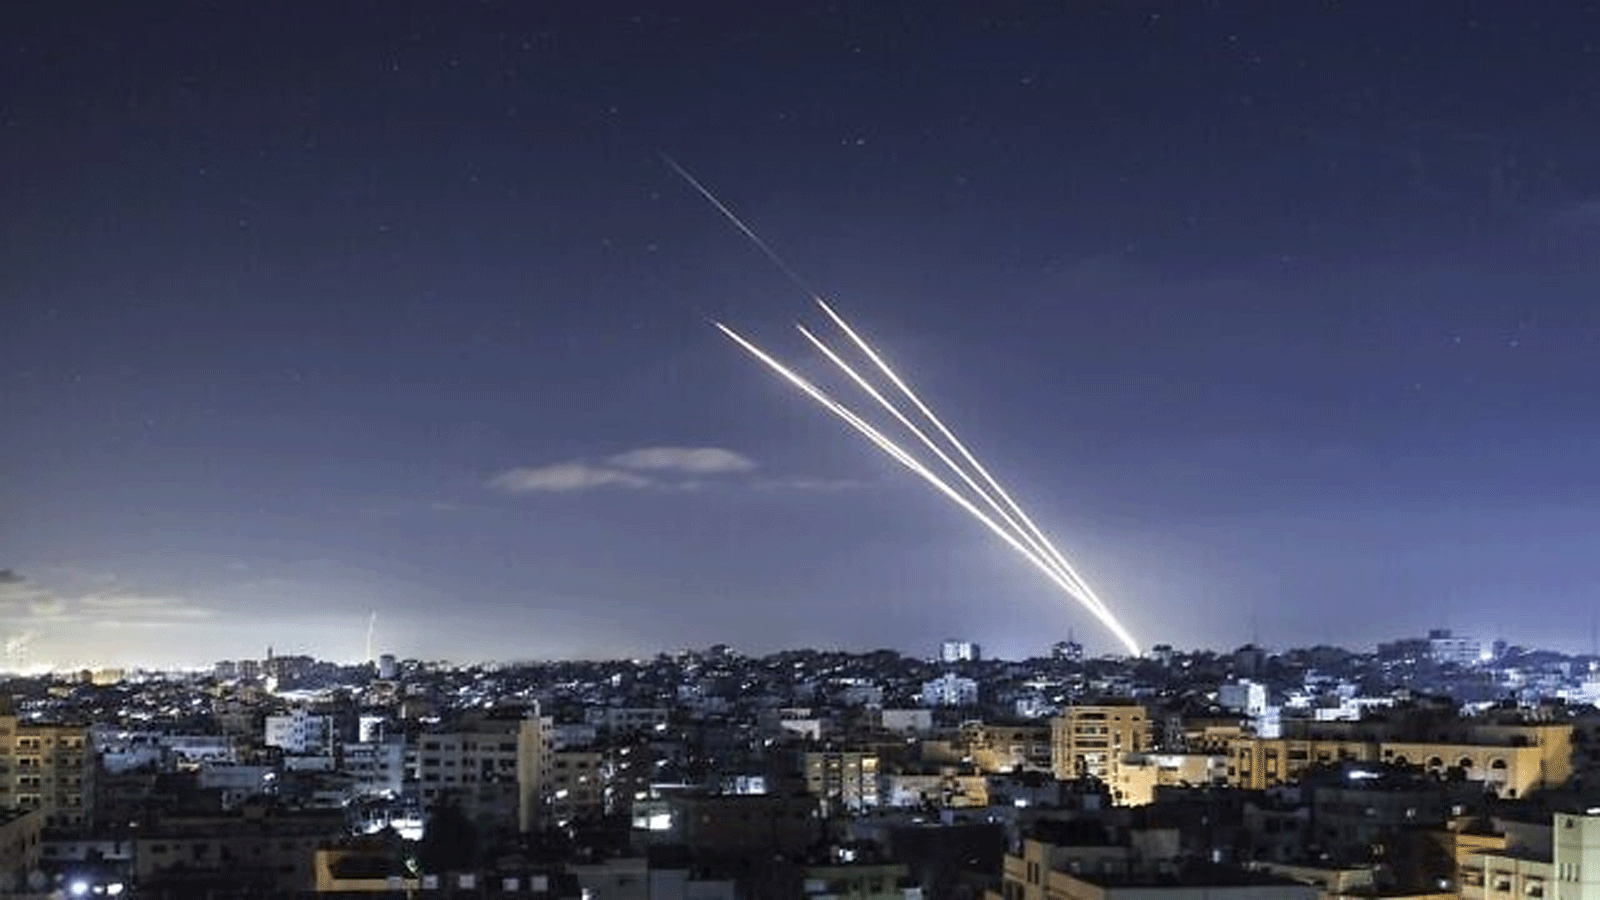 صاروخ أطلق من قطاع غزة يسقط في منطقة غير مأهولة في جنوب إسرائيل